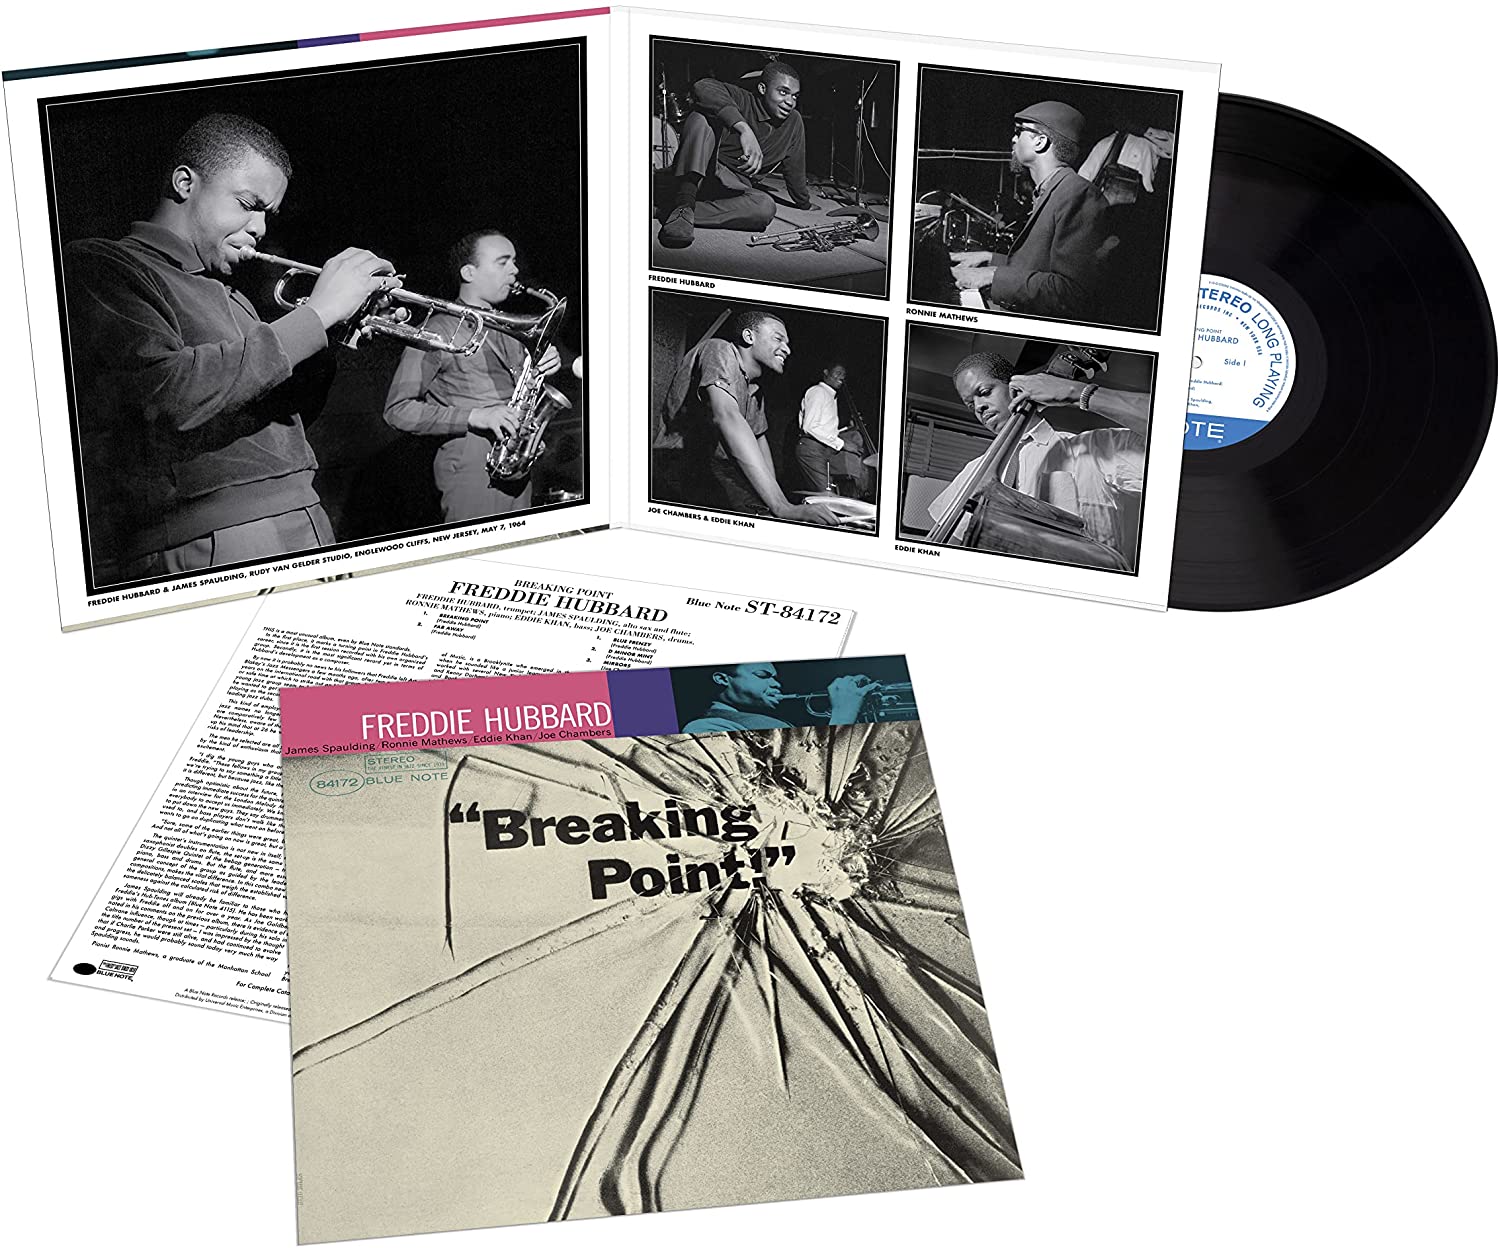 FREDDIE HUBBARD - Breaking Point (Blue Note Tone Poet Series) - LP - 180g Vinyl